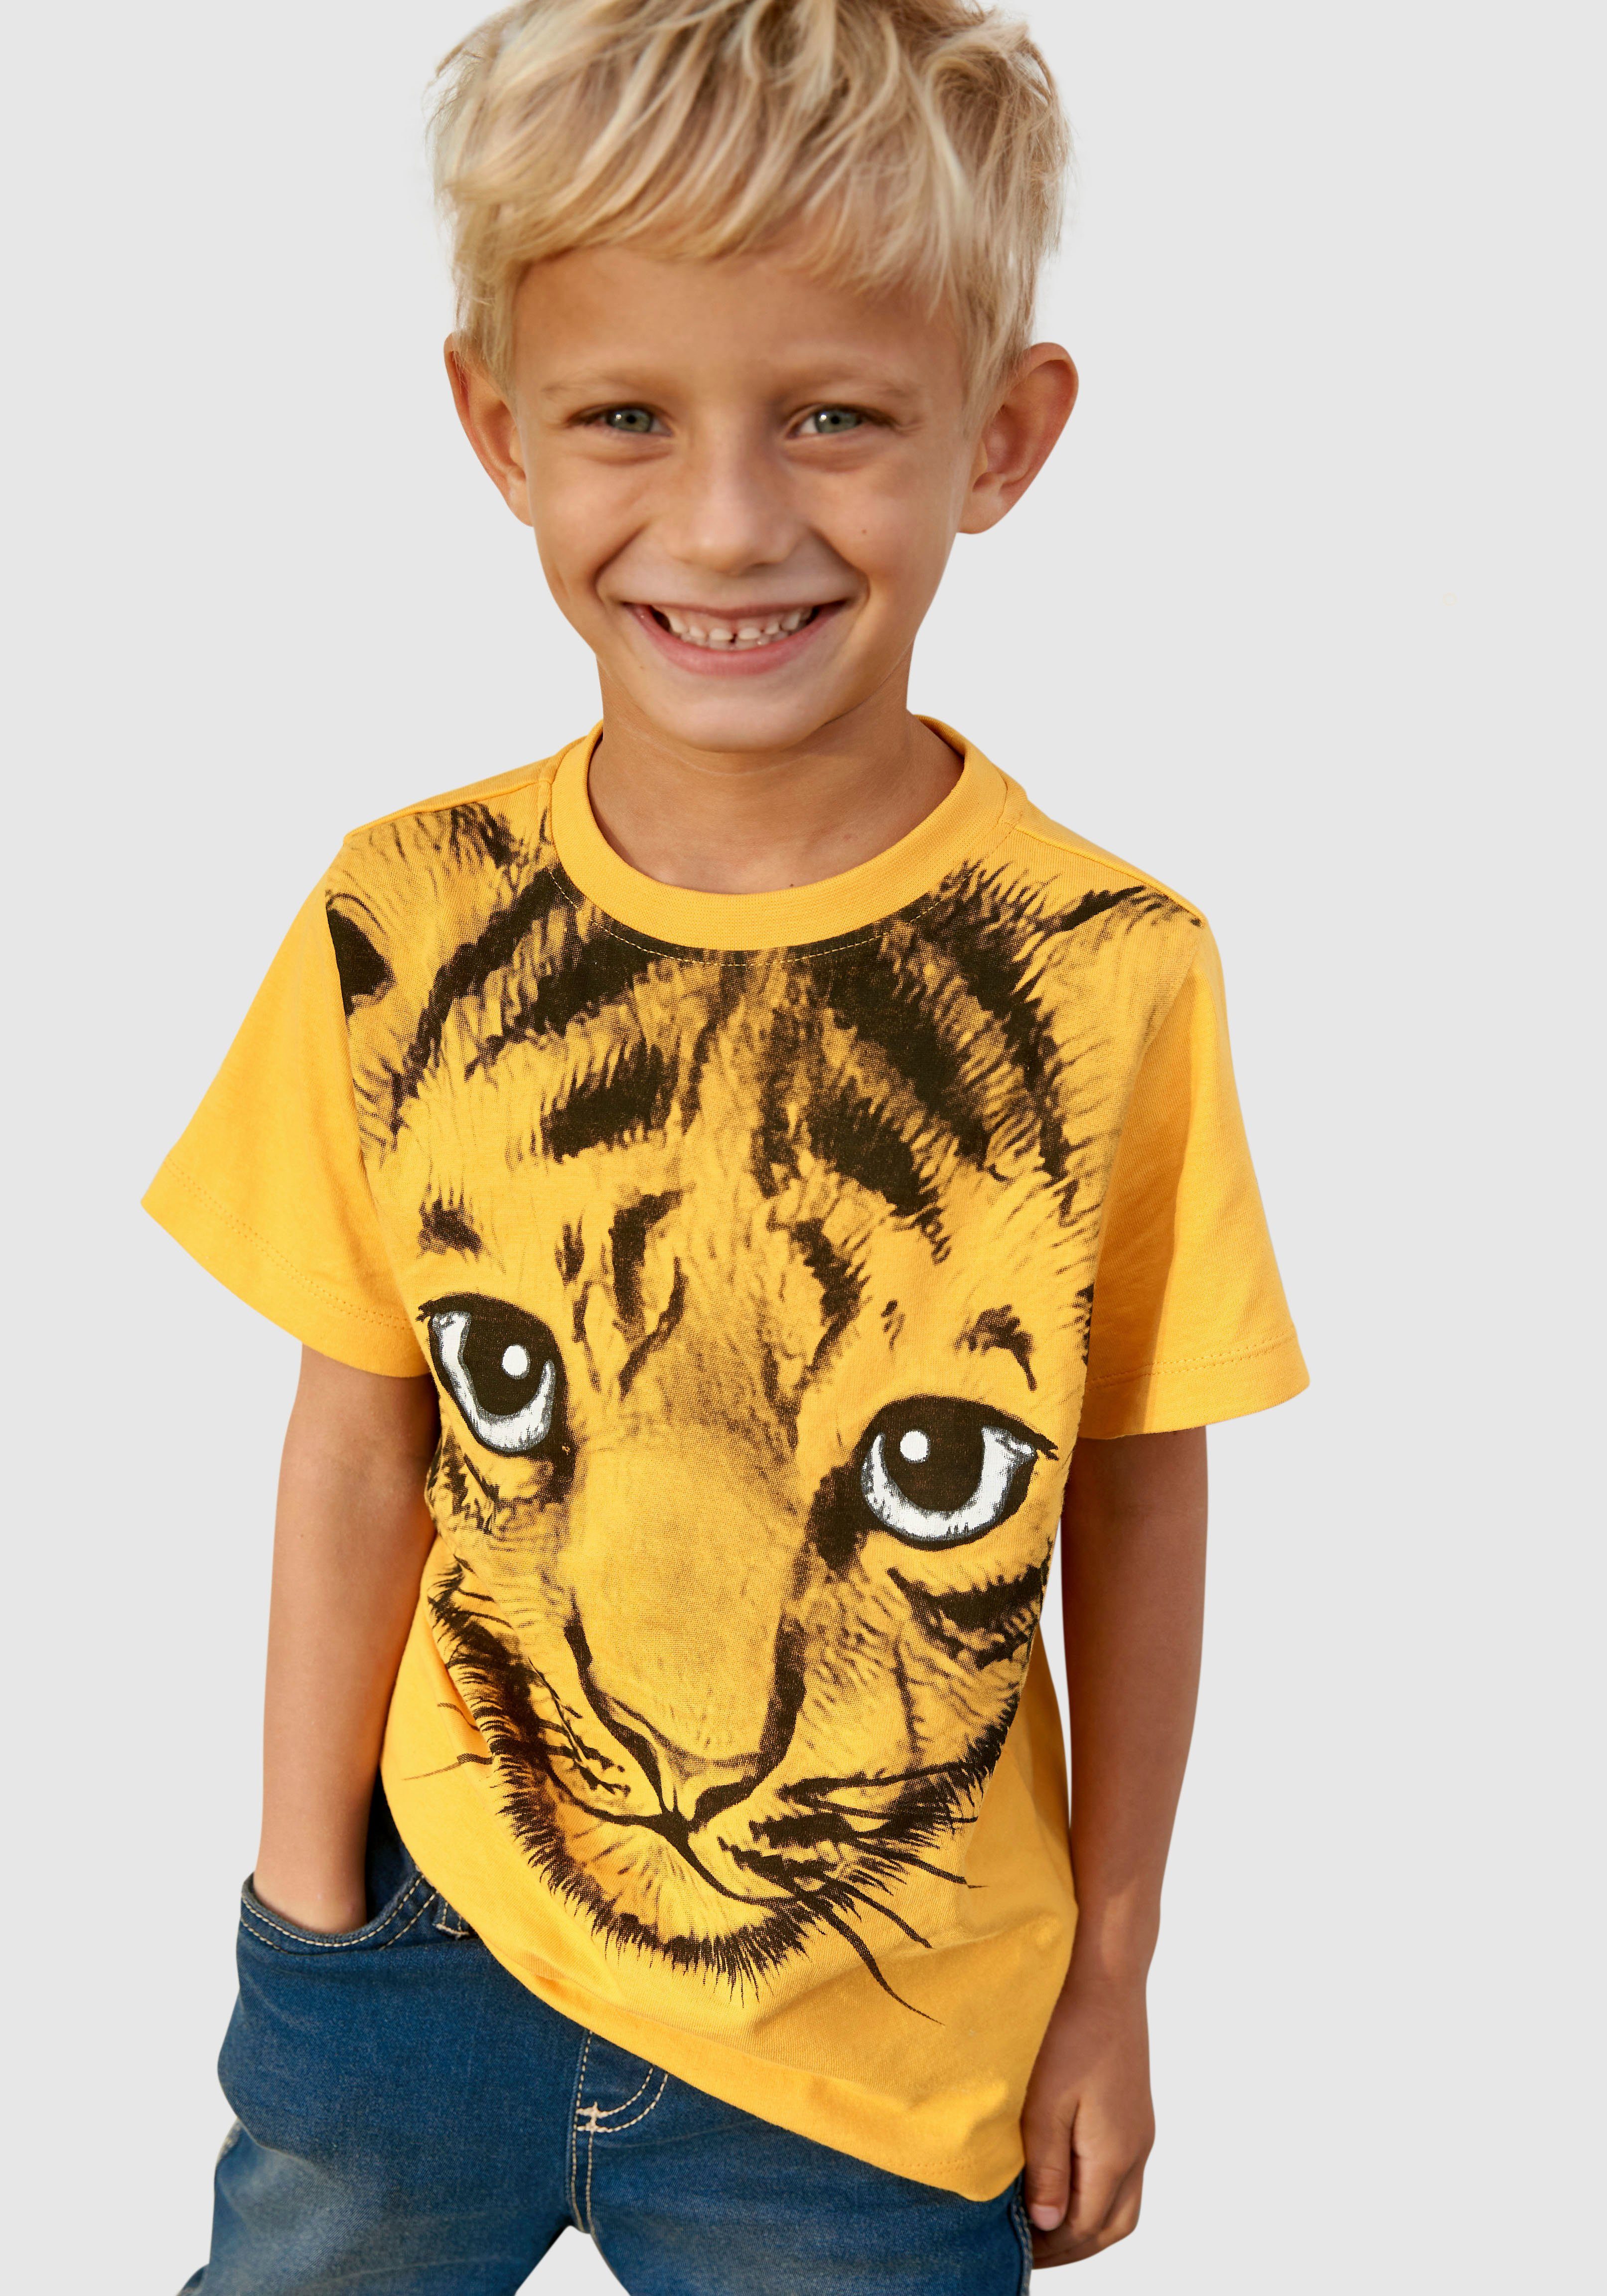 [Sie können echte Produkte zu günstigen Preisen kaufen!] KIDSWORLD T-Shirt LITTLE TIGER